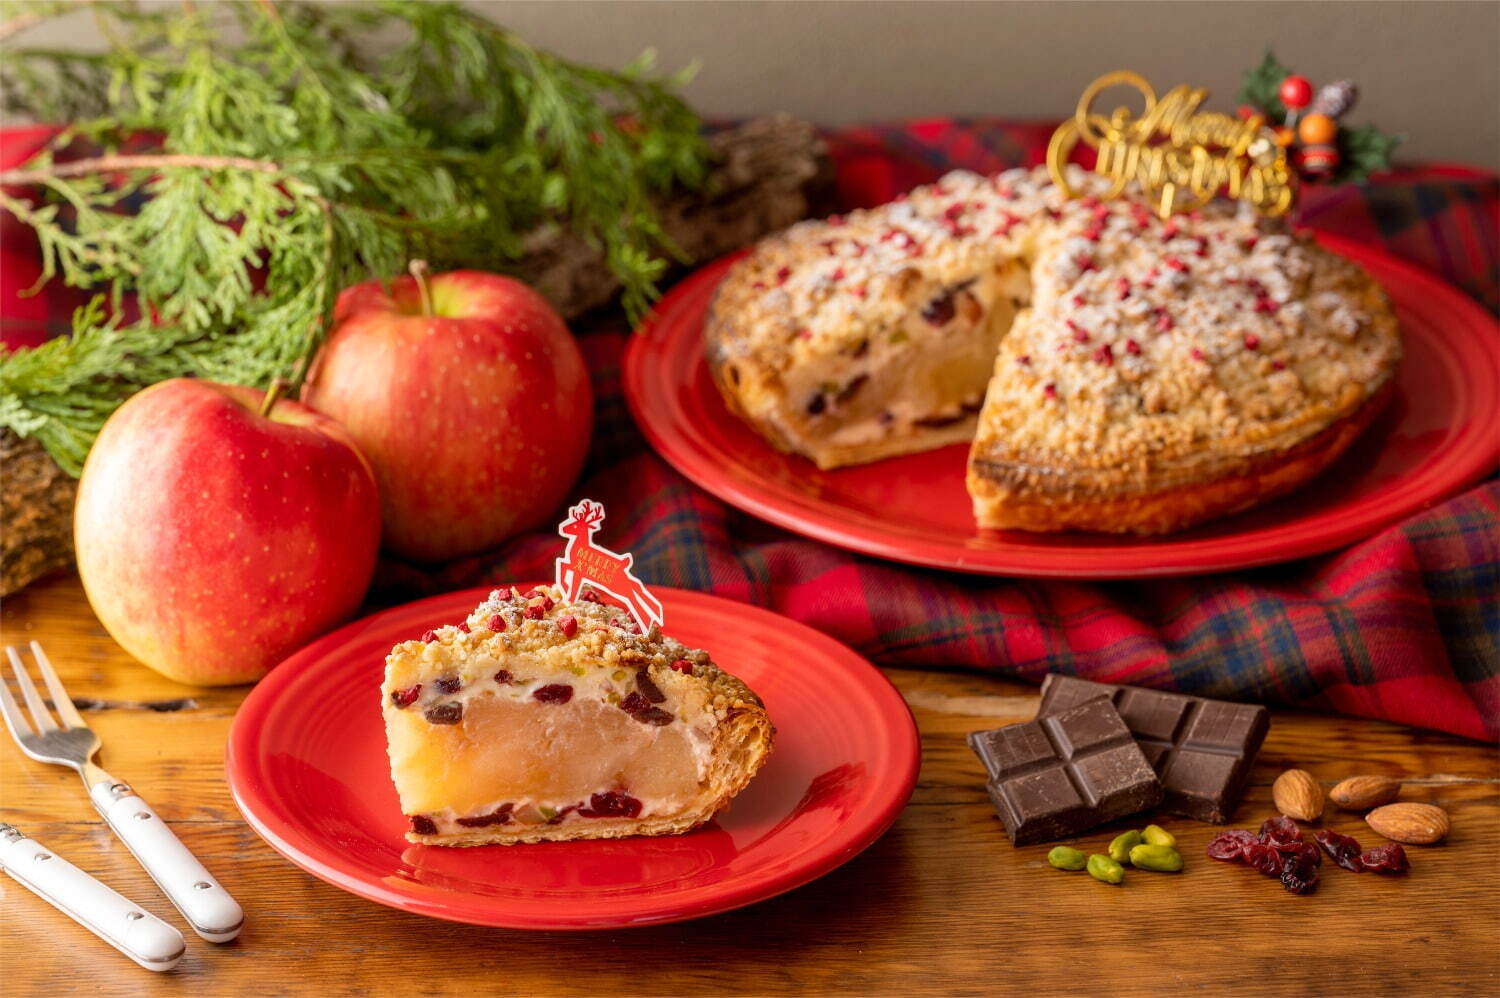 「チーズクランブルとチョコレートのクリスマスアップルパイ」